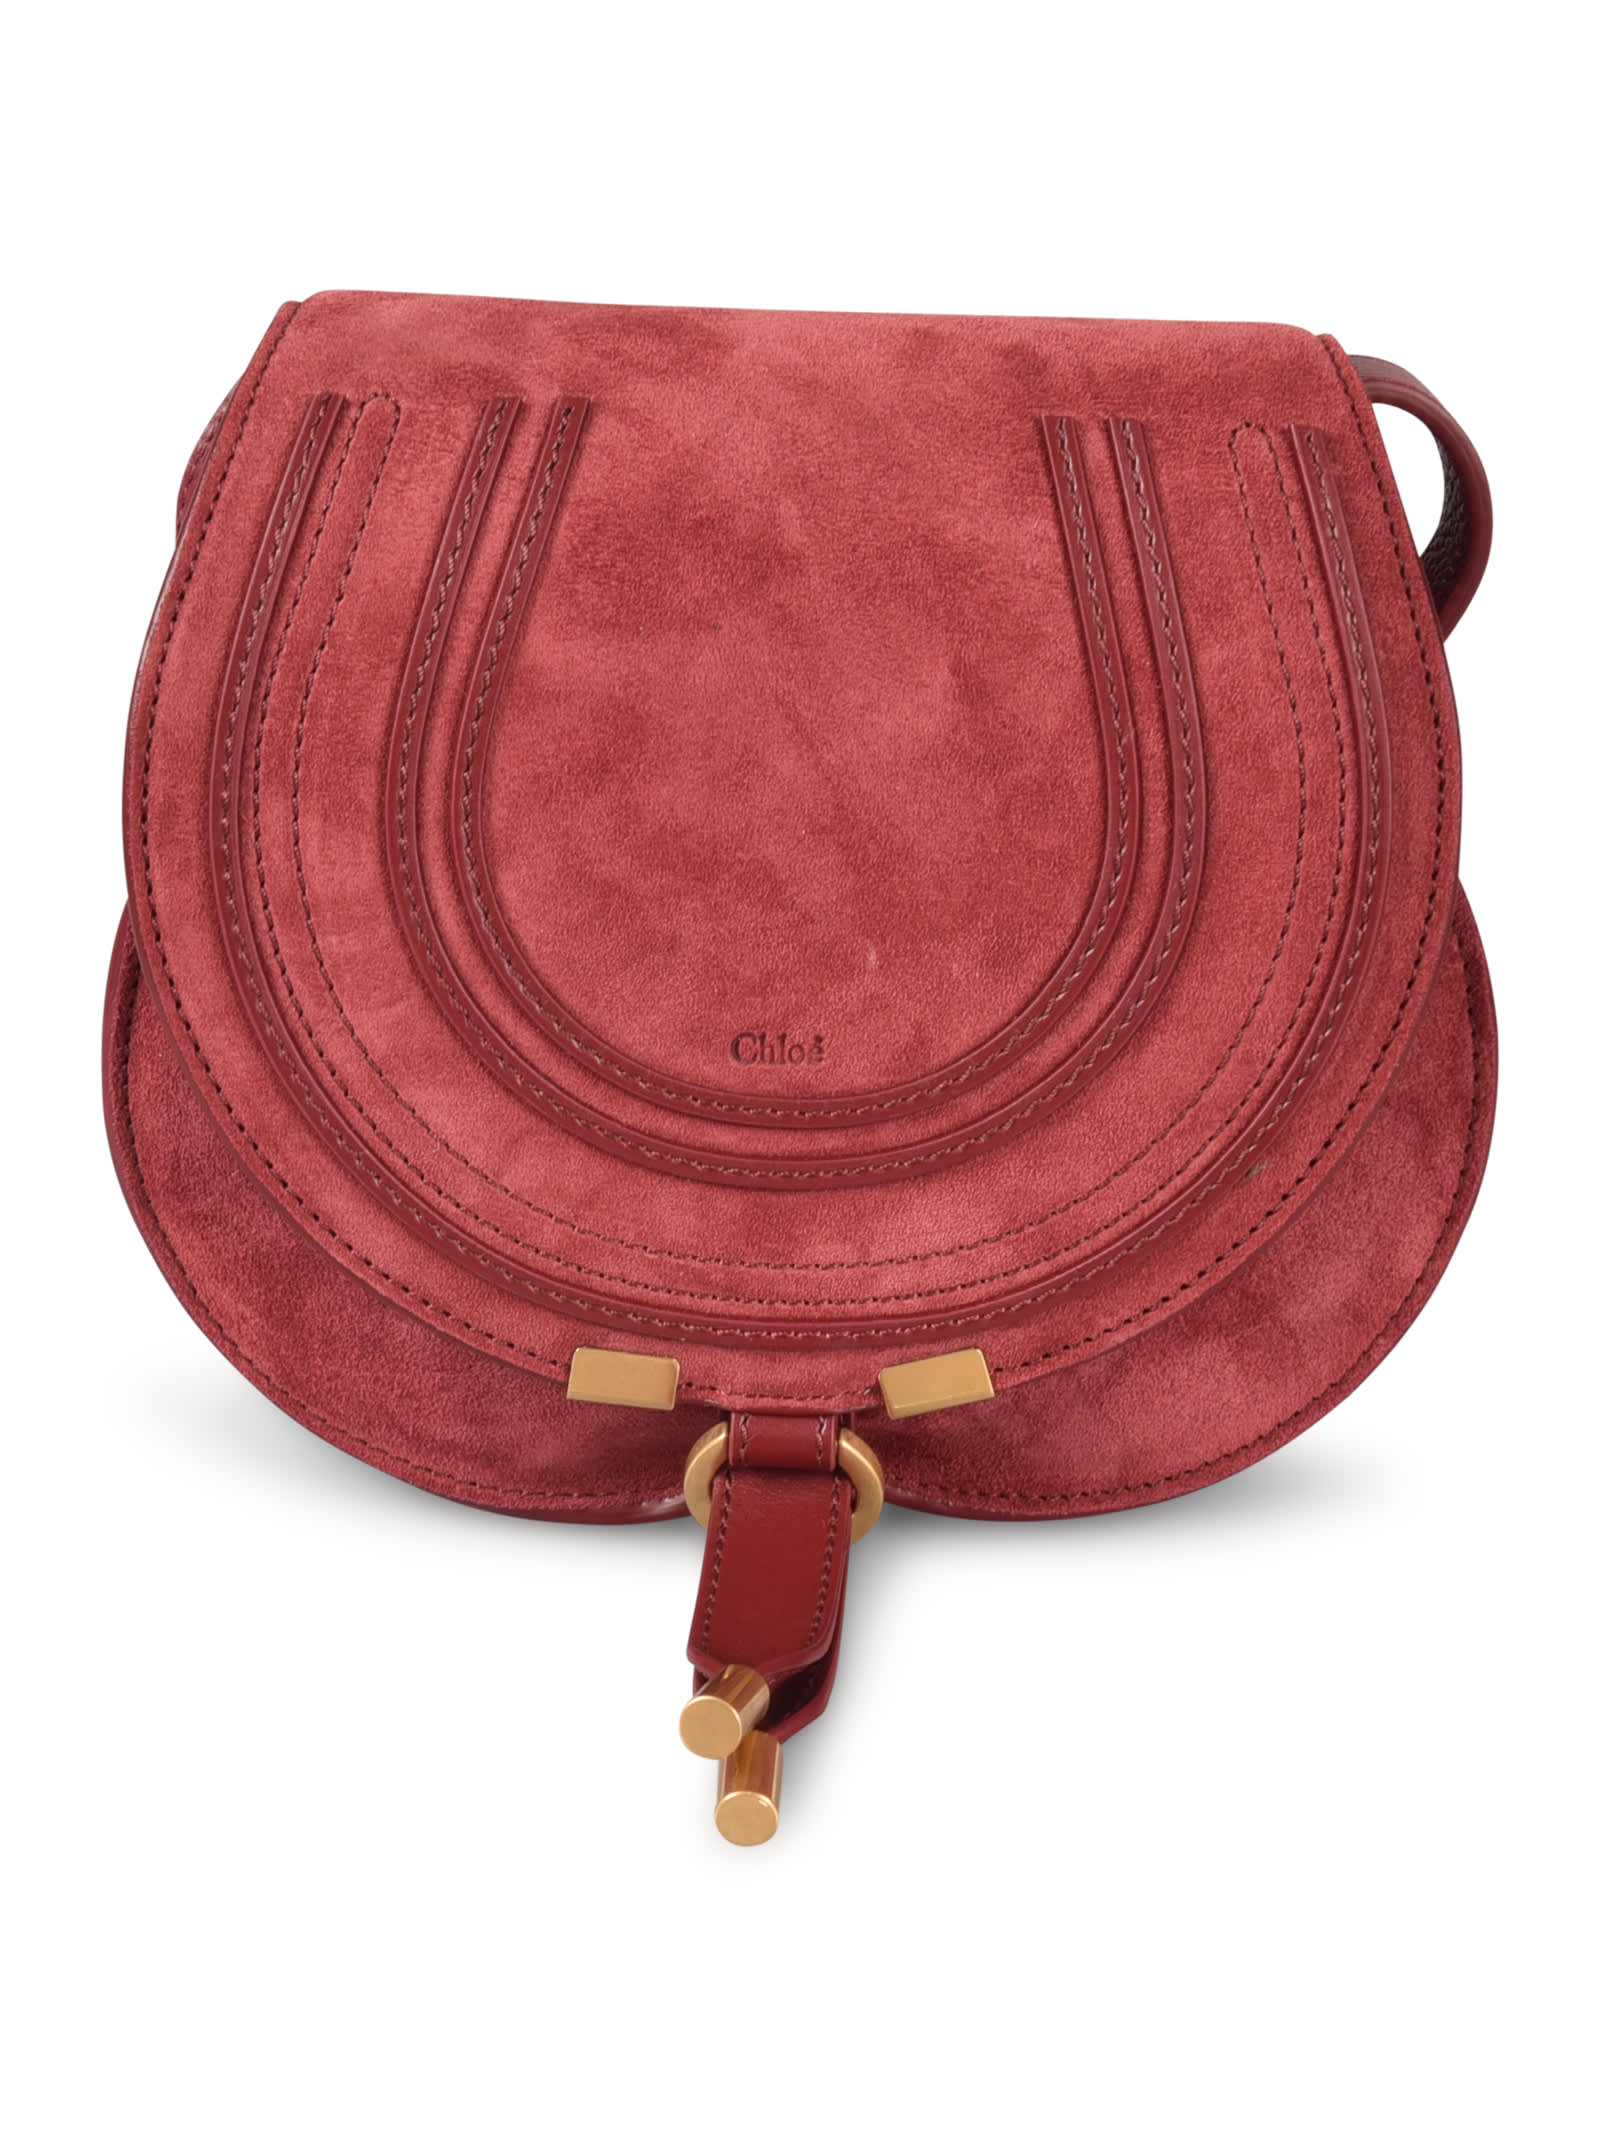 Chloé Marcie Saddle Shoulder Bag